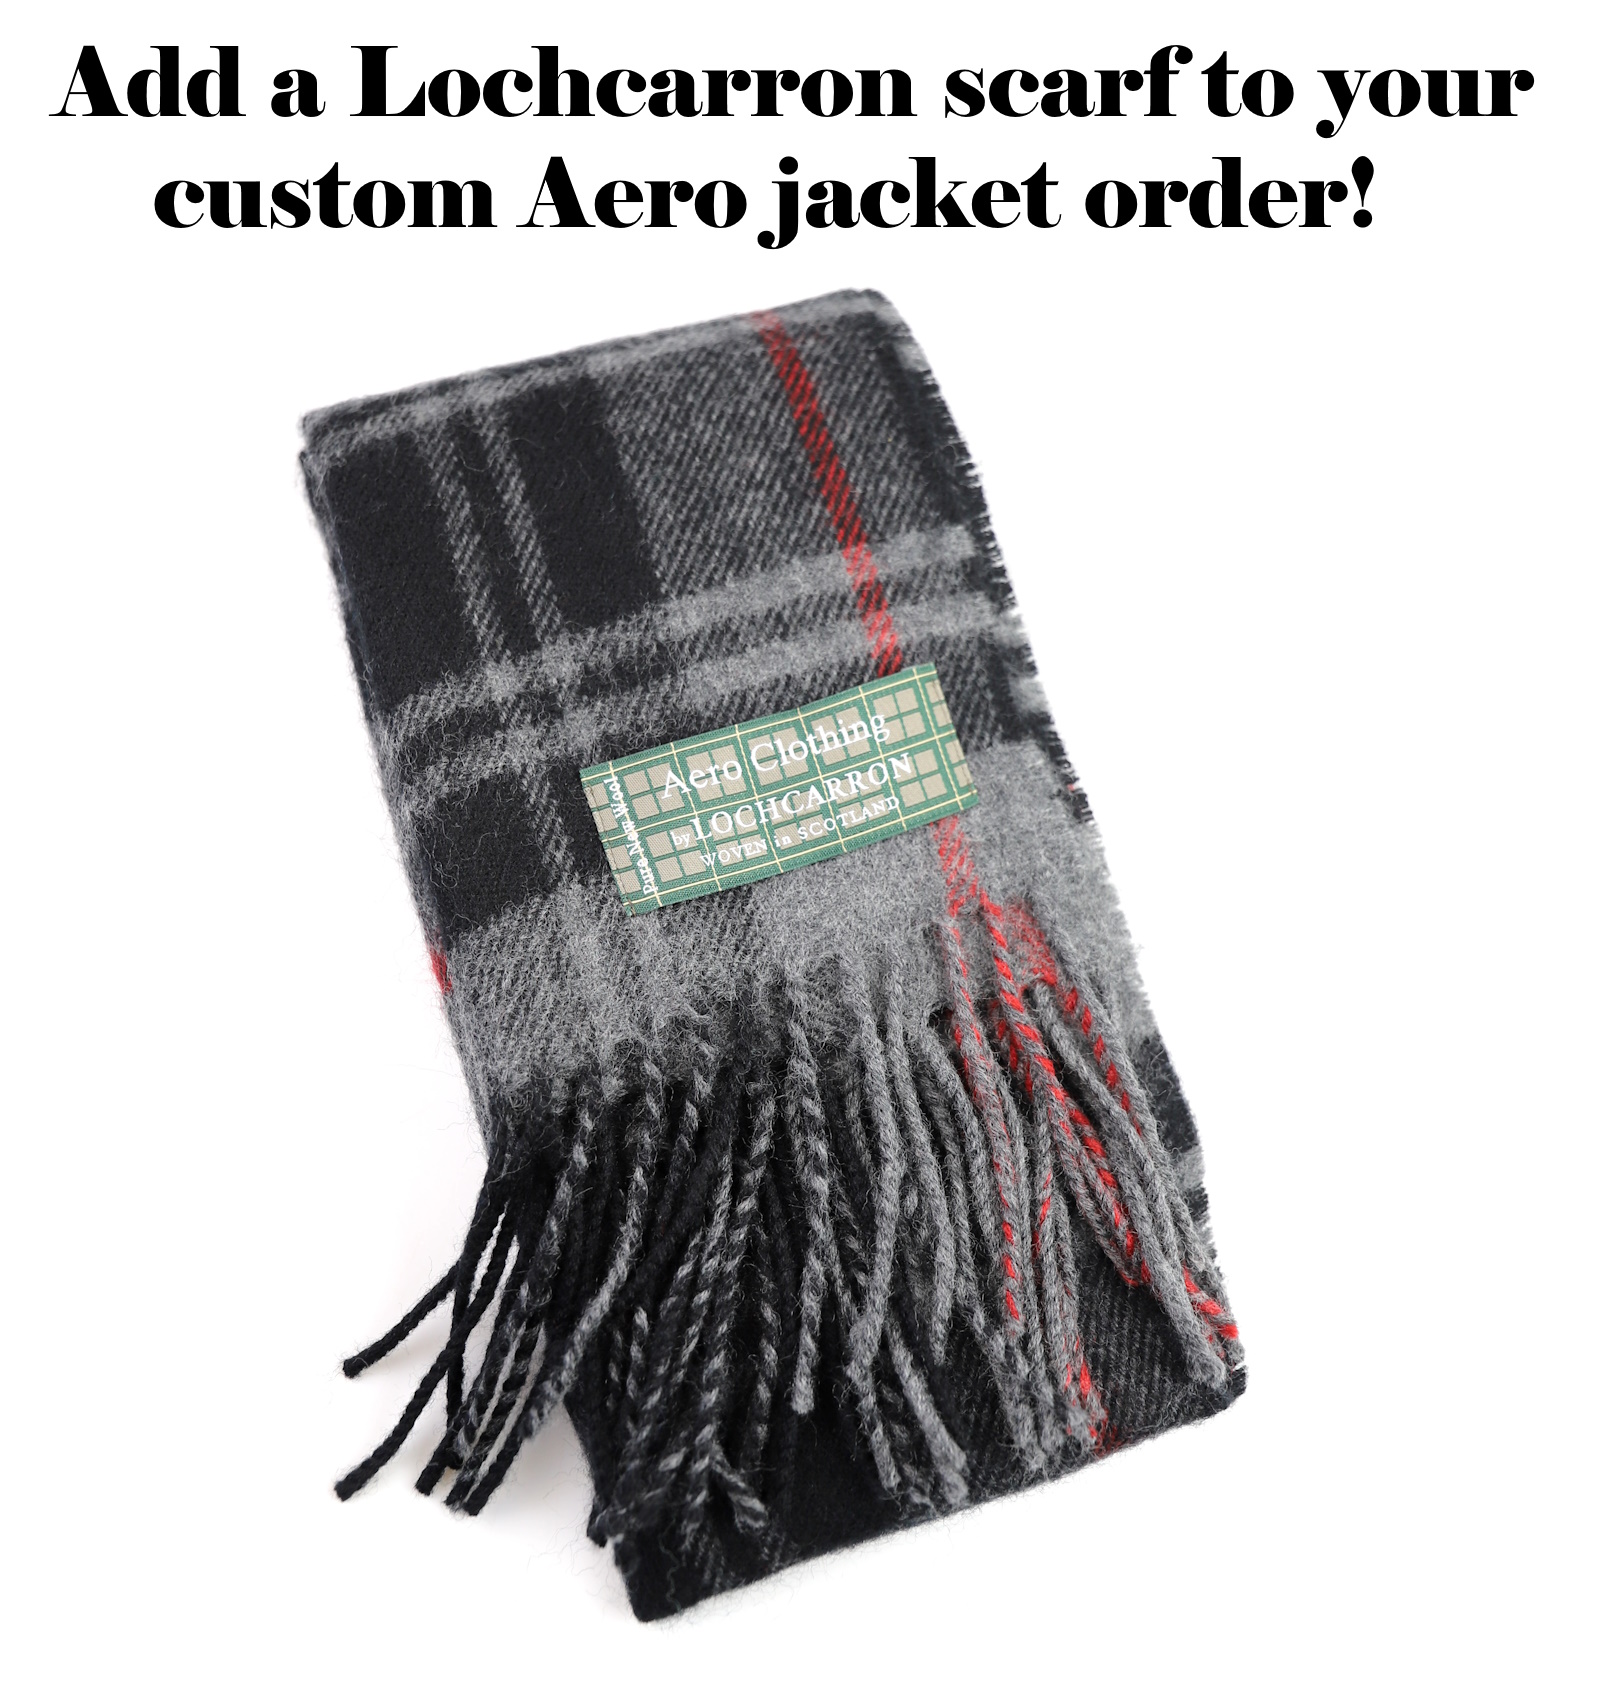 Lochcarron scarf.jpg